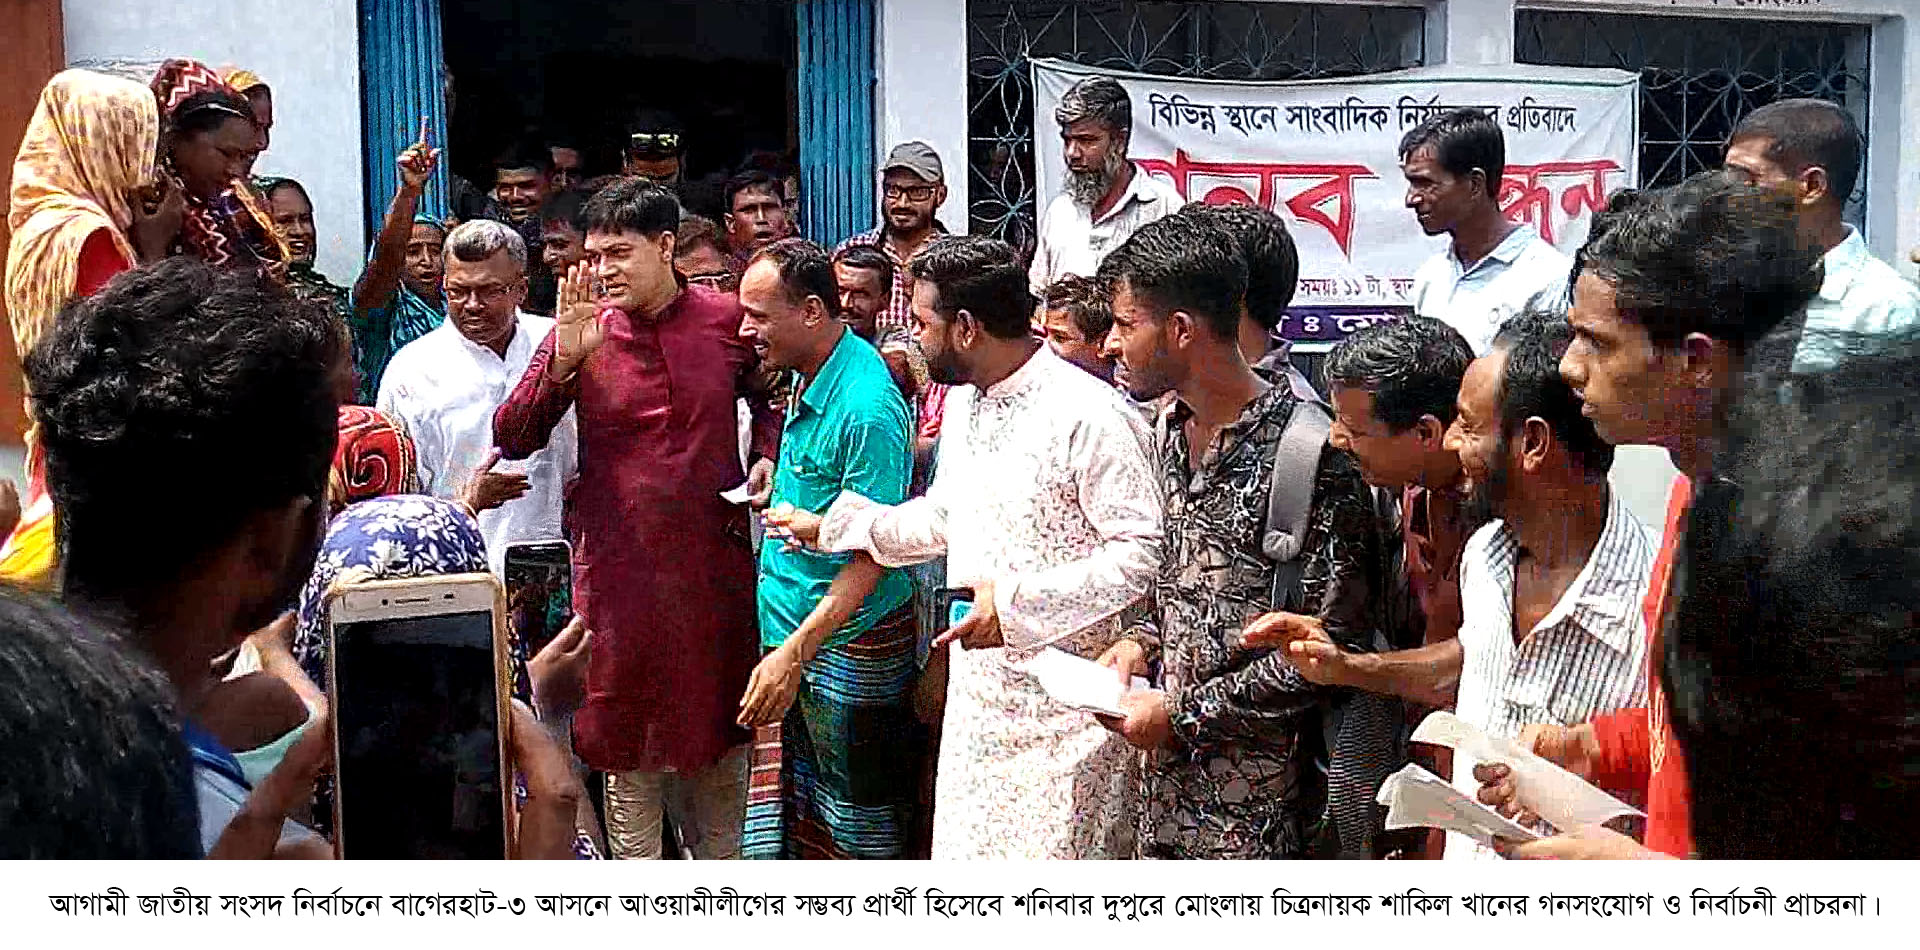 আওমীলীগের সম্ভব্য প্রার্থী হিসেবে মোংলায় চিত্রনায়ন শাকিল খানের গনসংযোগঃ নির্বাচনী প্রচারনায় ব্যারিষ্টার ওবায়দুল হক - Vision Bangla24